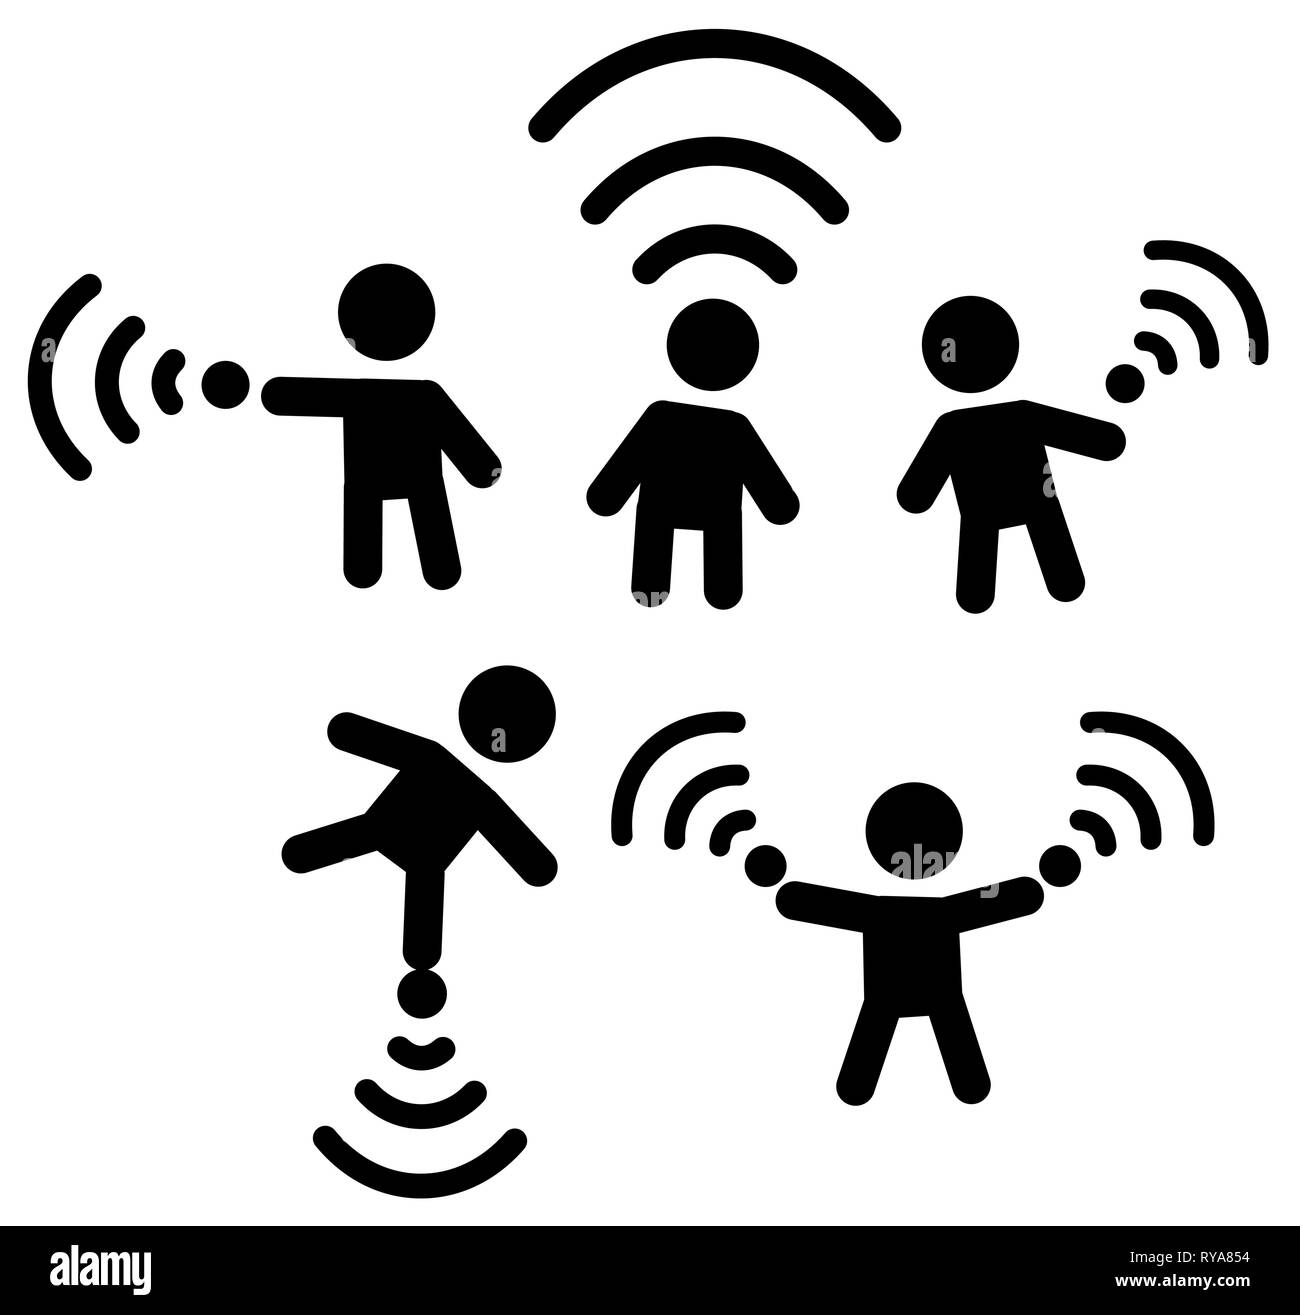 Une connexion Wi-Fi gratuite pochoir chiffres icon set noir sélection, vector illustration, horizontal, sur fond blanc, isolé Illustration de Vecteur